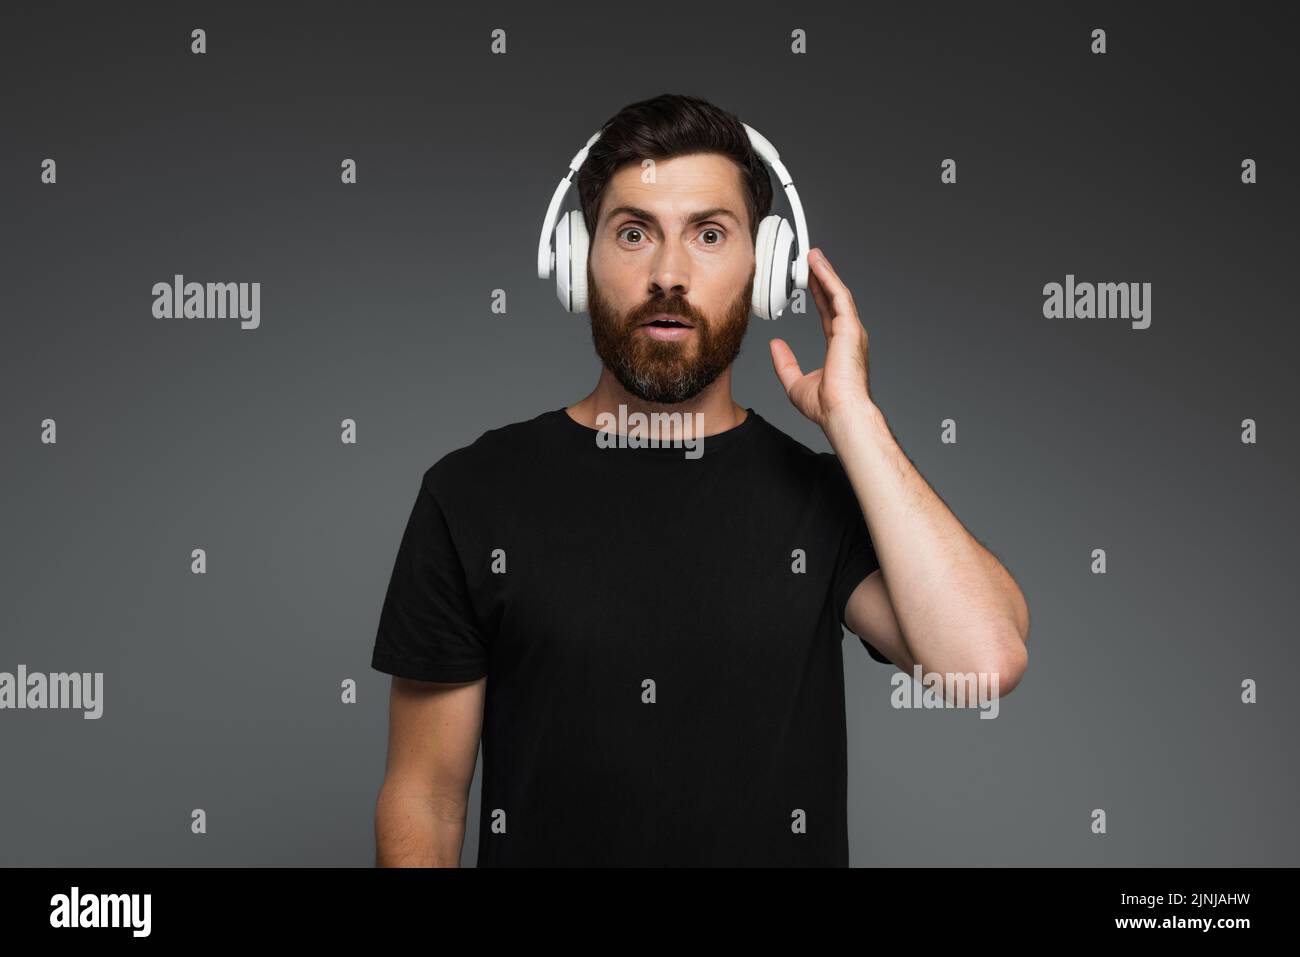 sorprendido hombre tocando los auriculares inalámbricos y escuchando música aislada en gris, imagen de archivo Foto de stock